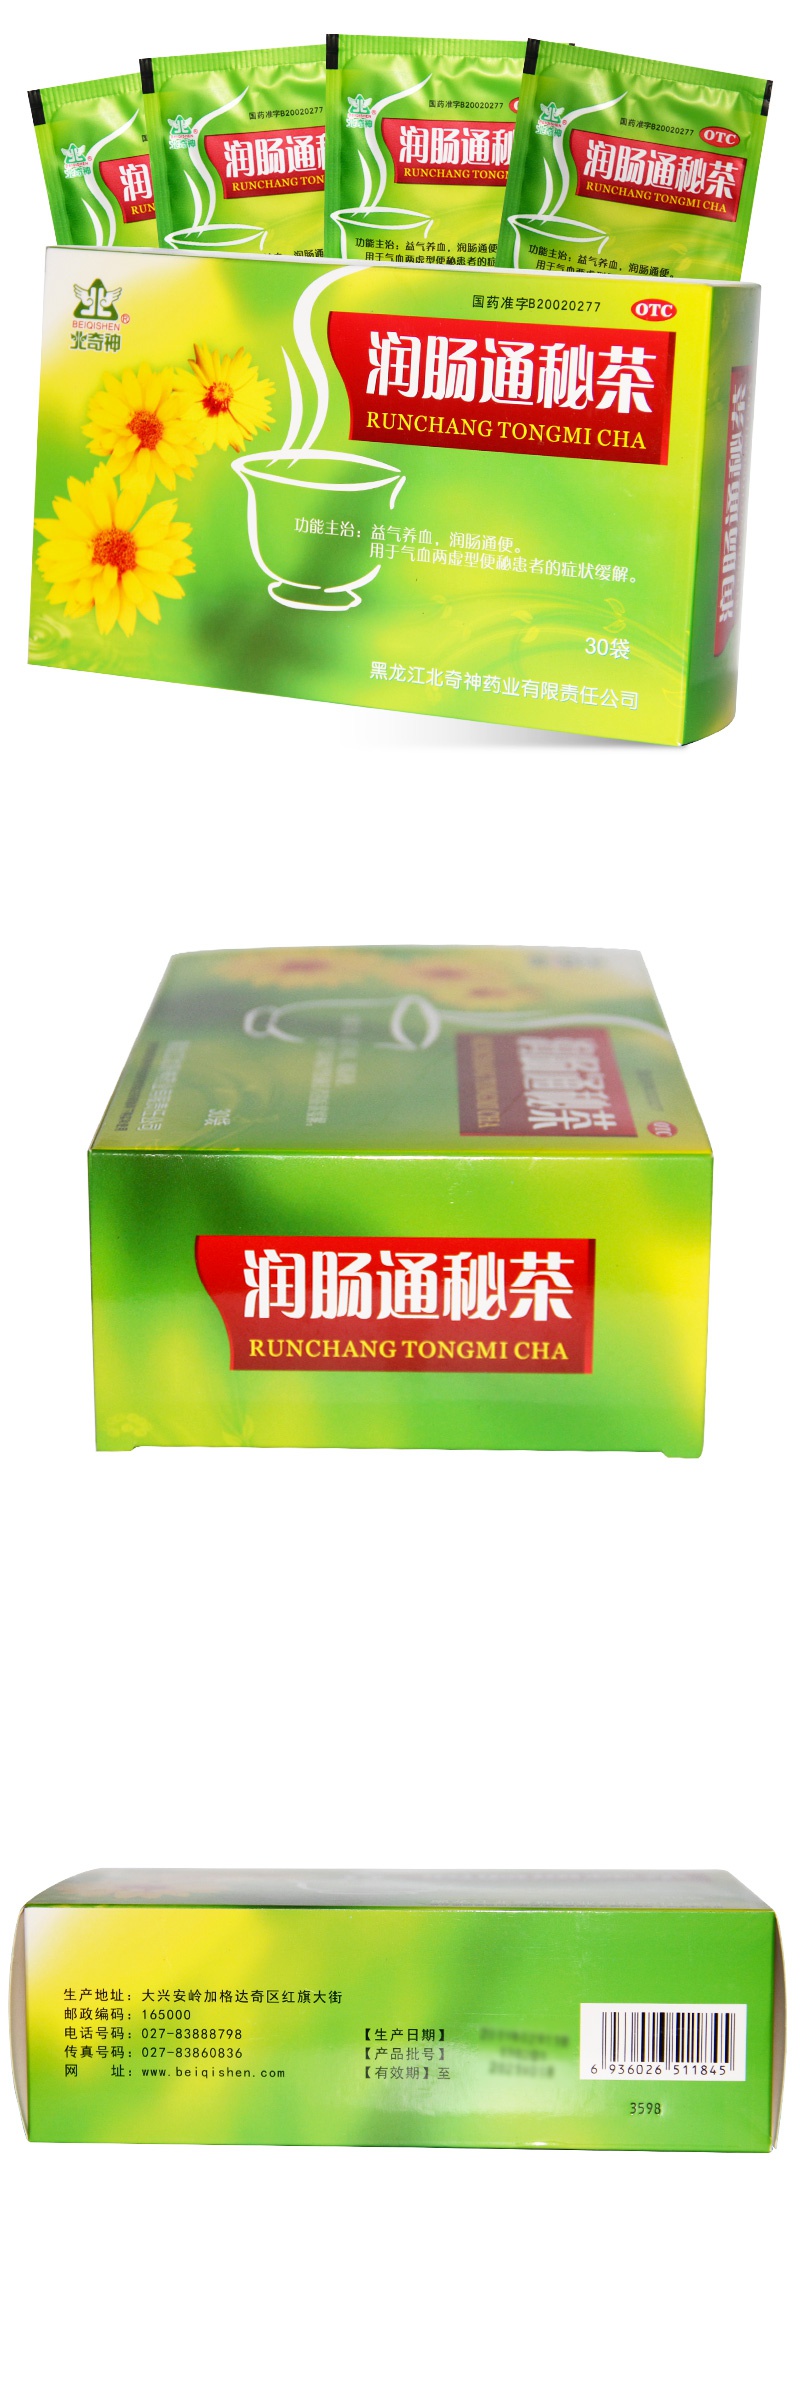 北奇神润肠通秘茶30袋盒益气养血润肠通便用于气血两虚型便秘患者的